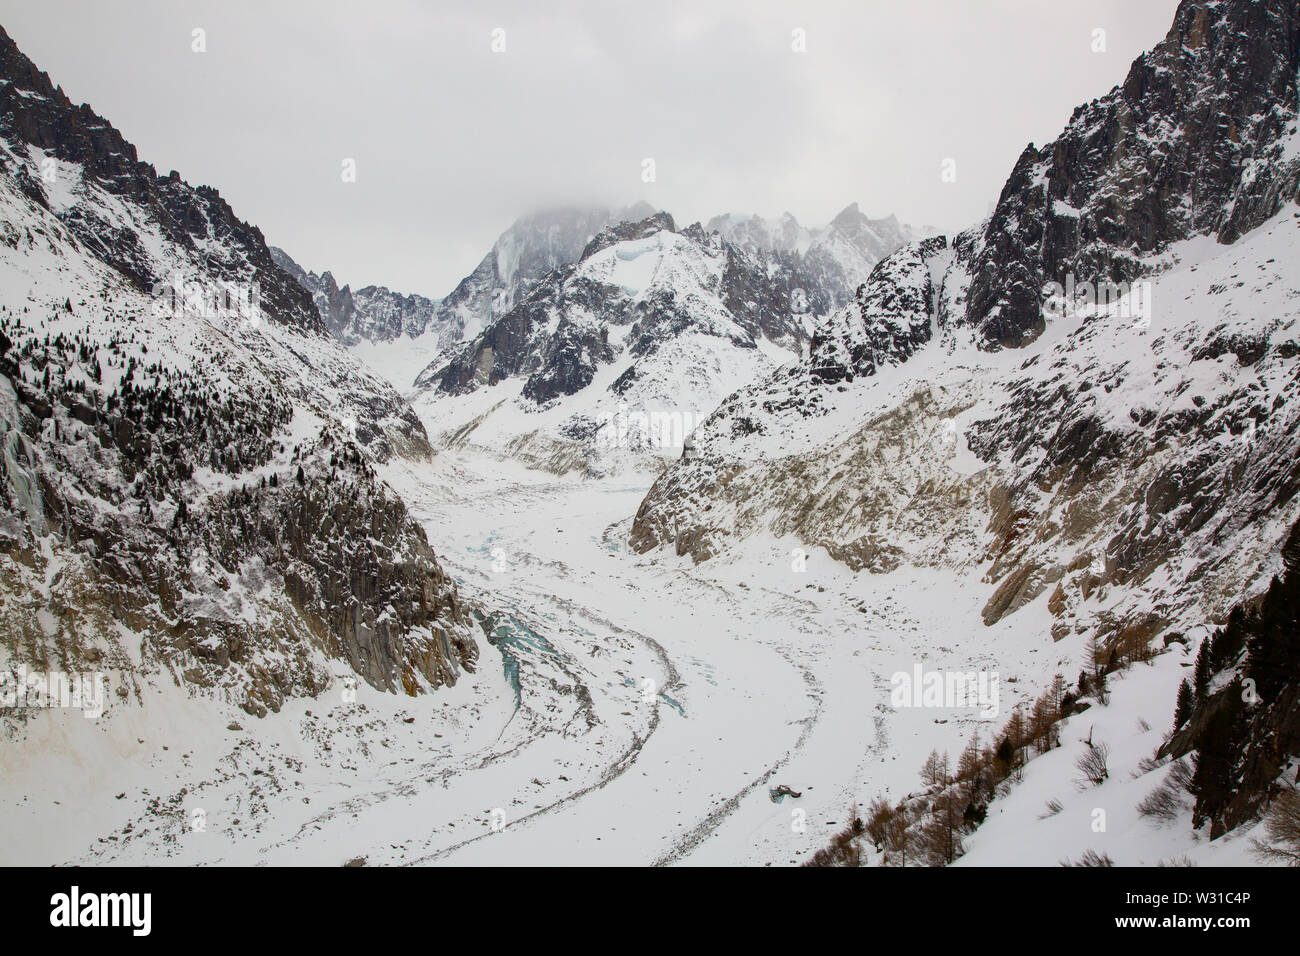 La Mer de Glace - Mer de Glace - un glacier de vallée située sur le versant nord du massif du Mont Blanc, dans les Alpes françaises. Banque D'Images